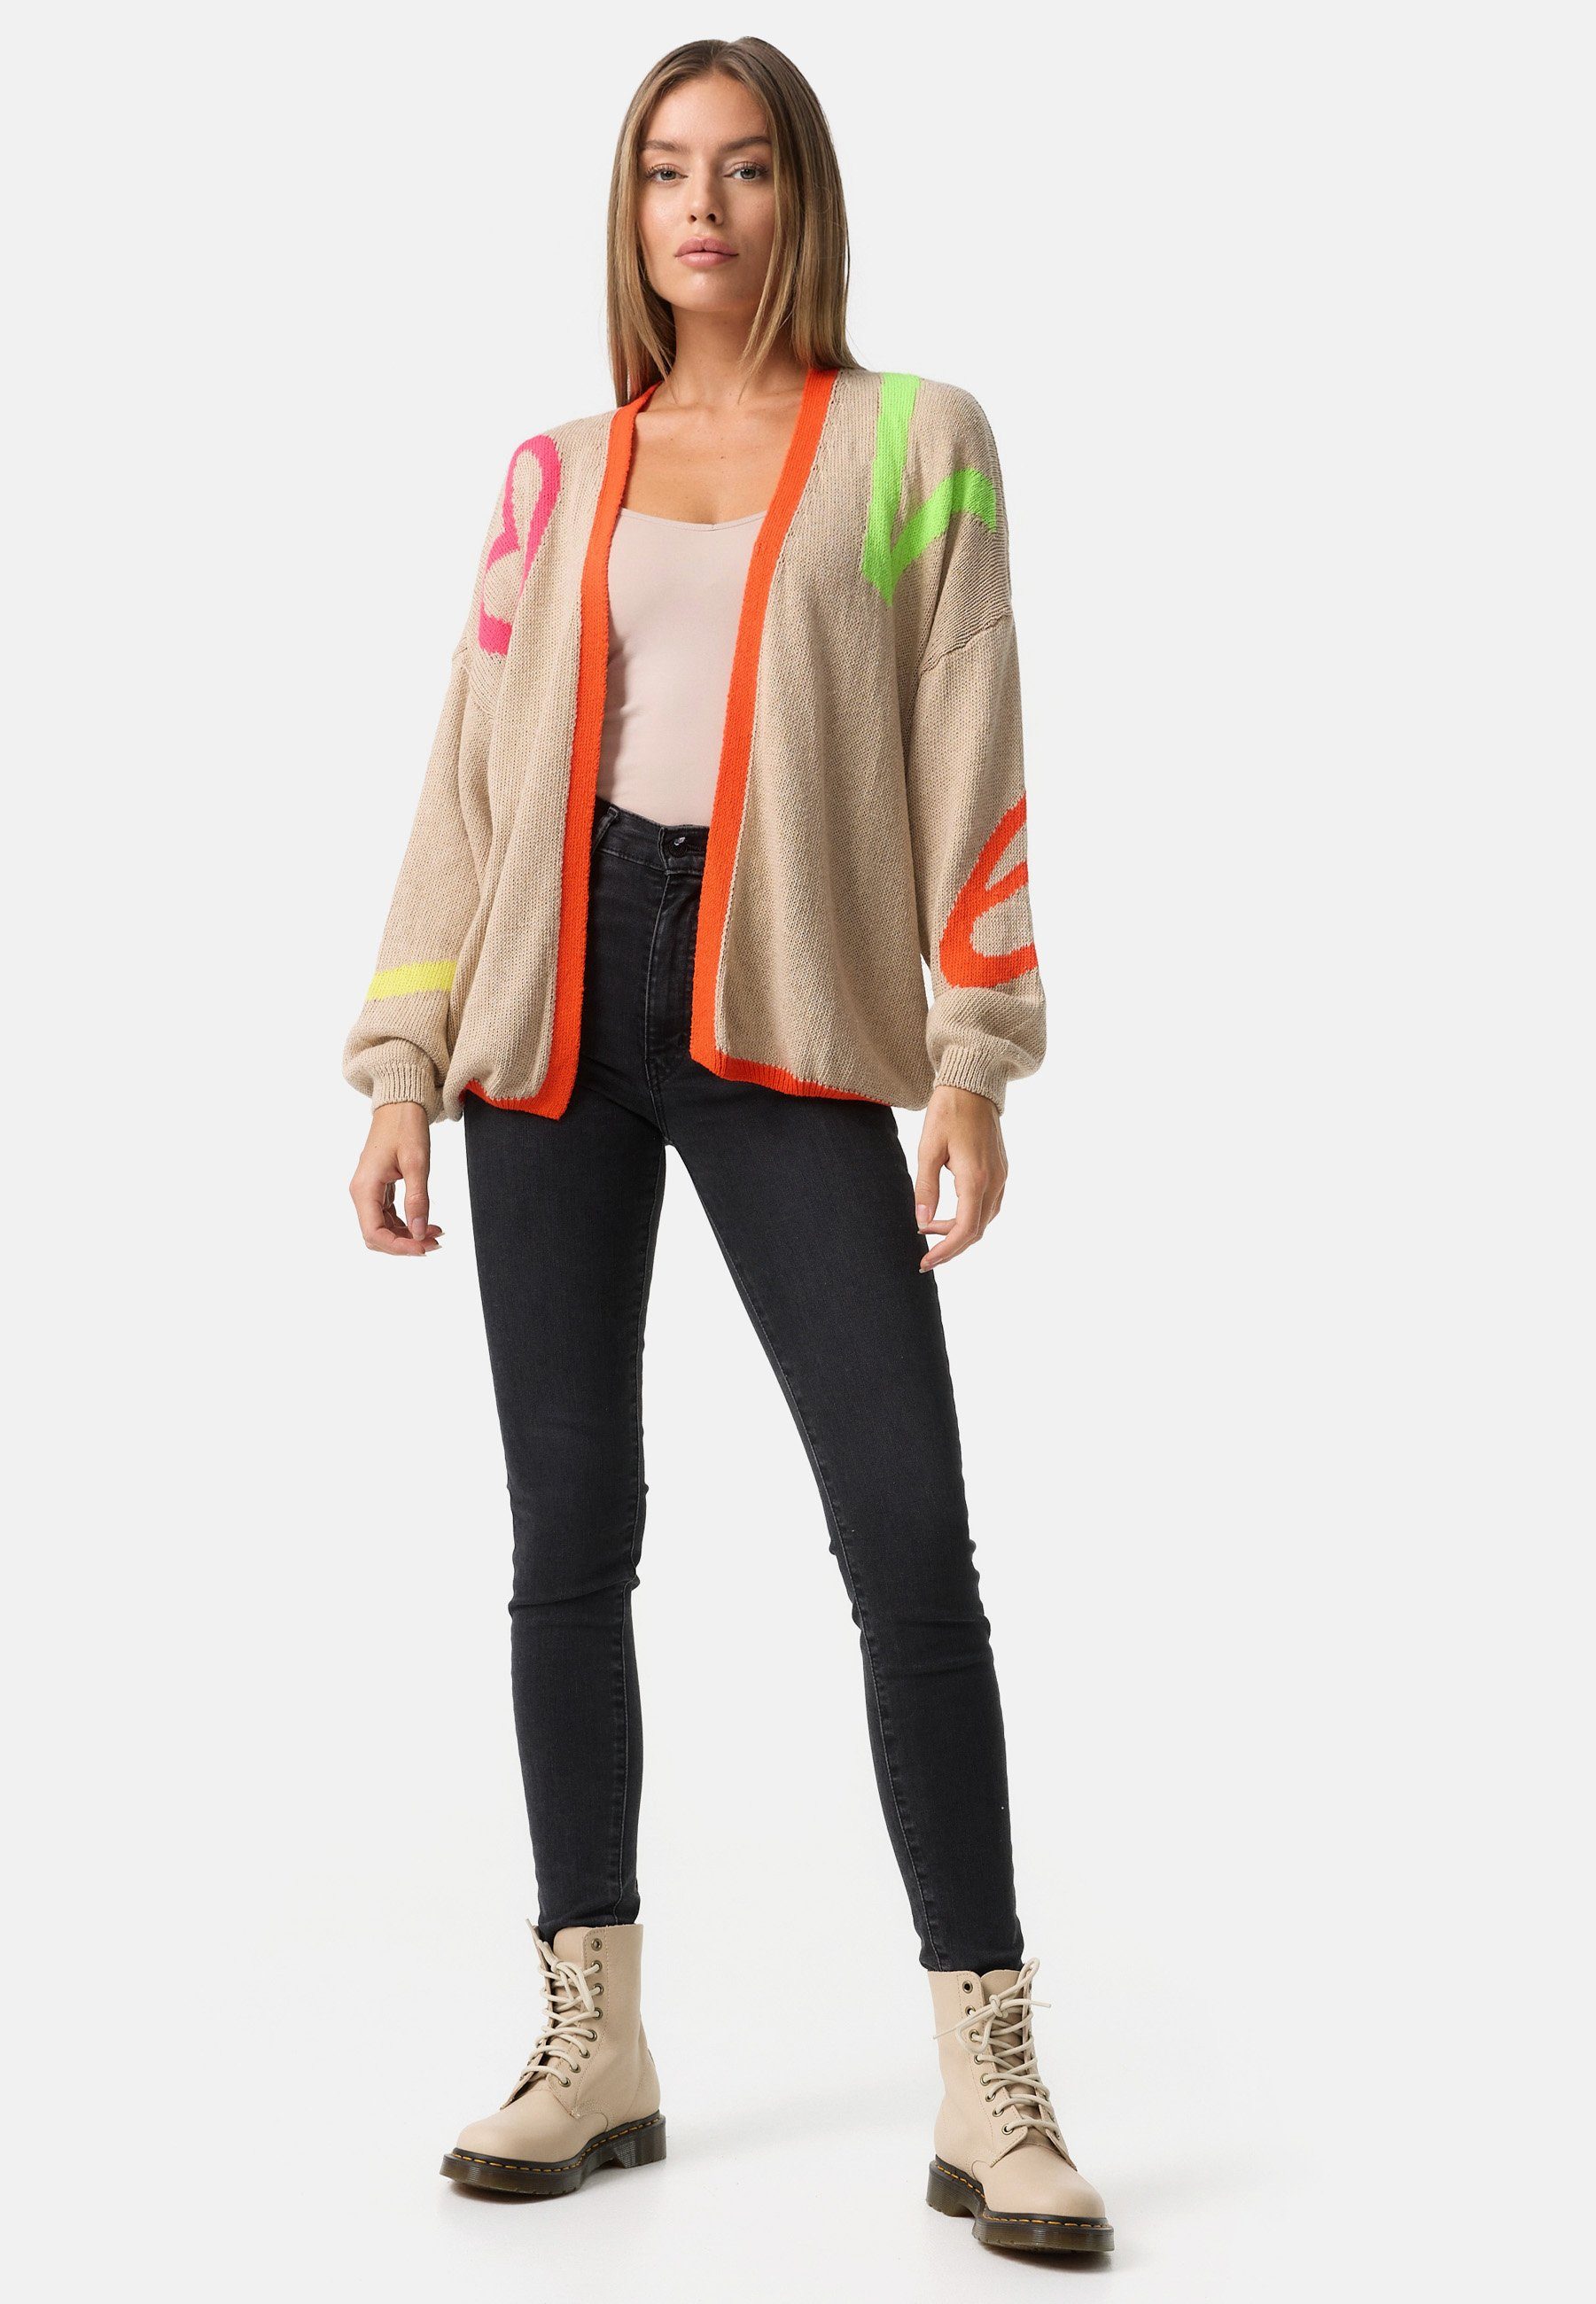 Love Beige 80ies Style) PM78 SELECTED Cardigan Muster, Cardigan im Neonfarben Baumwollanteil, (Trendige Strickjacke PM